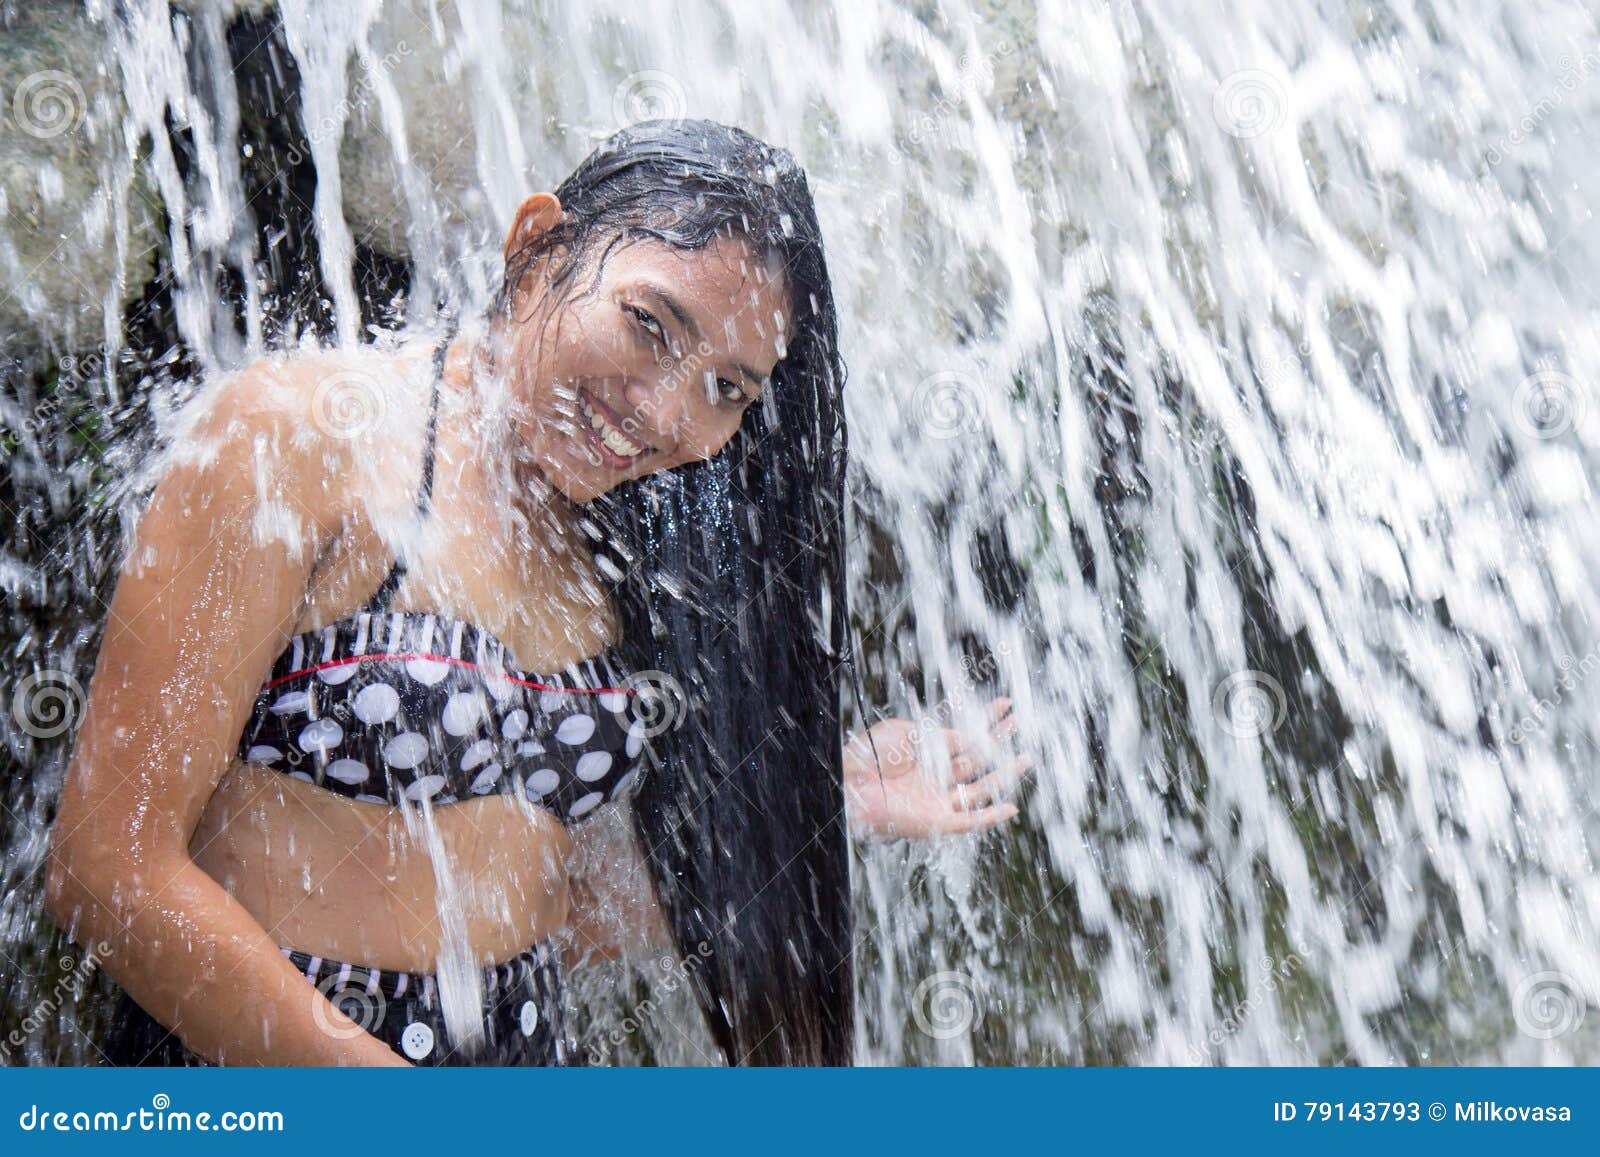 deanna tarpley recommends Women Bathing In Waterfalls